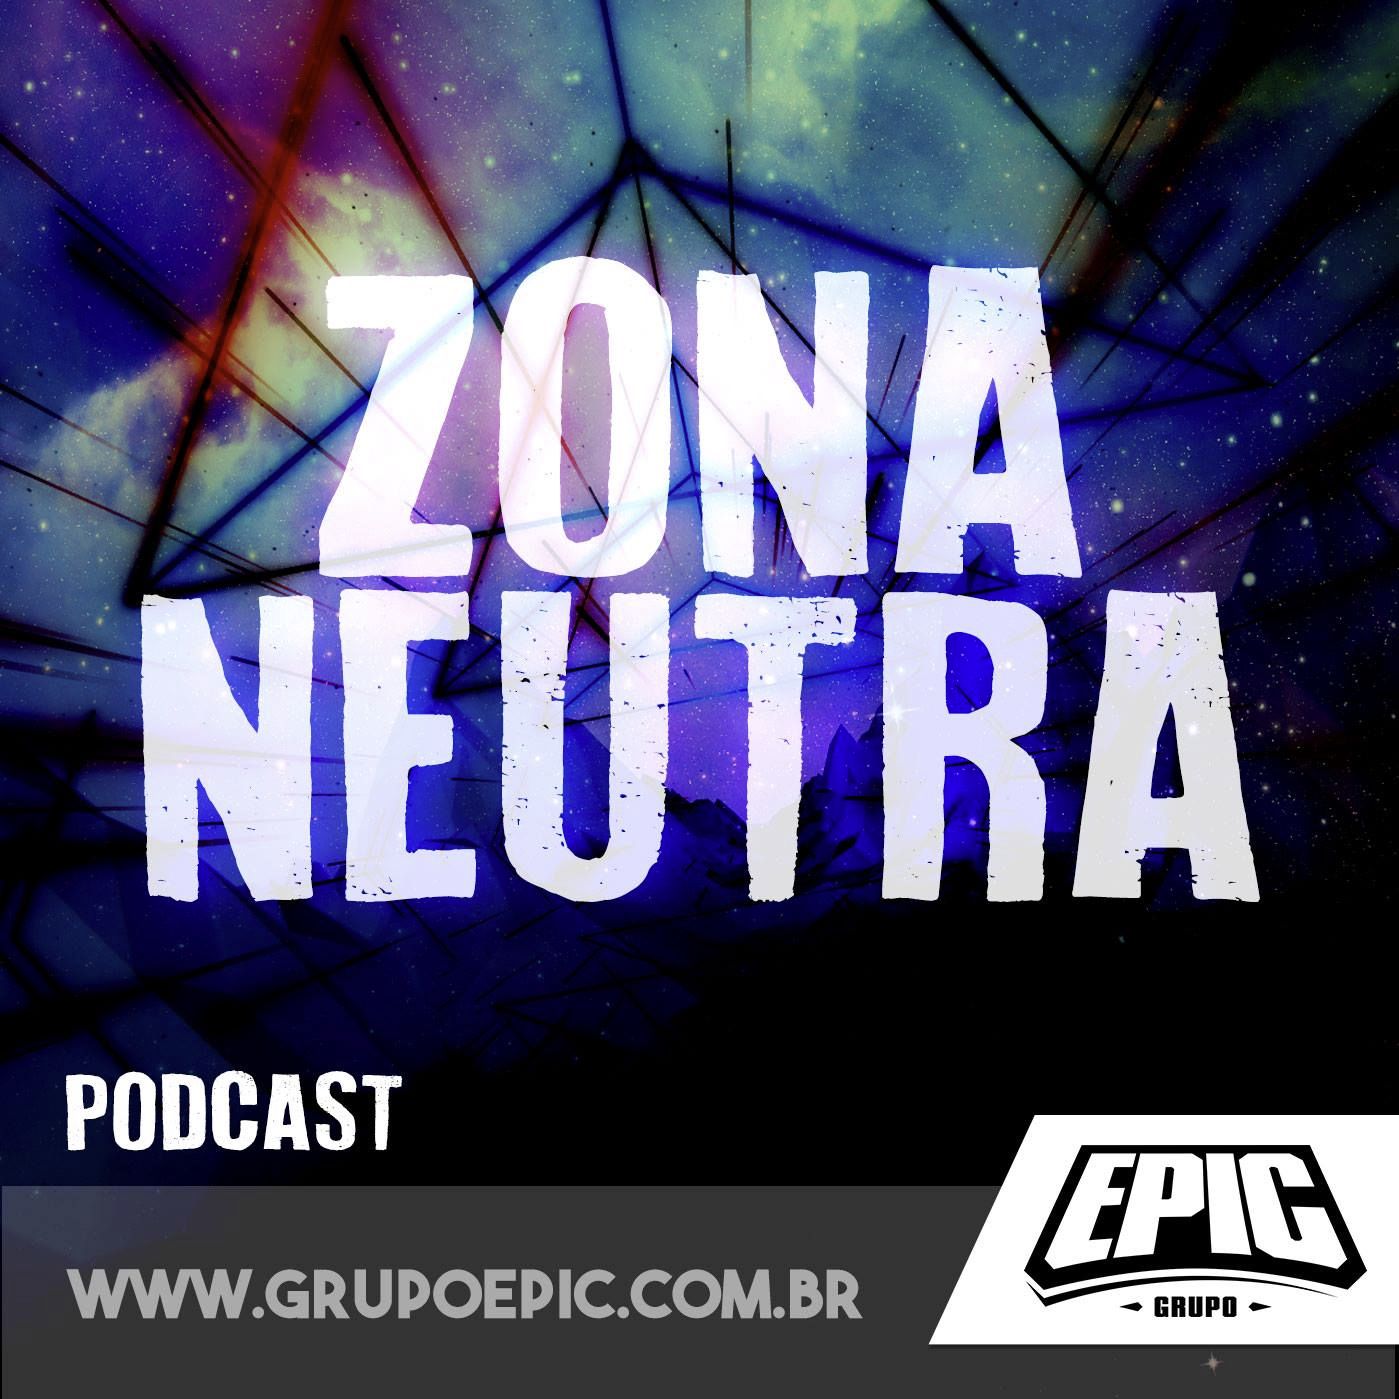 ZONA NEUTRA S02E10 - JEDICON RIO 2017